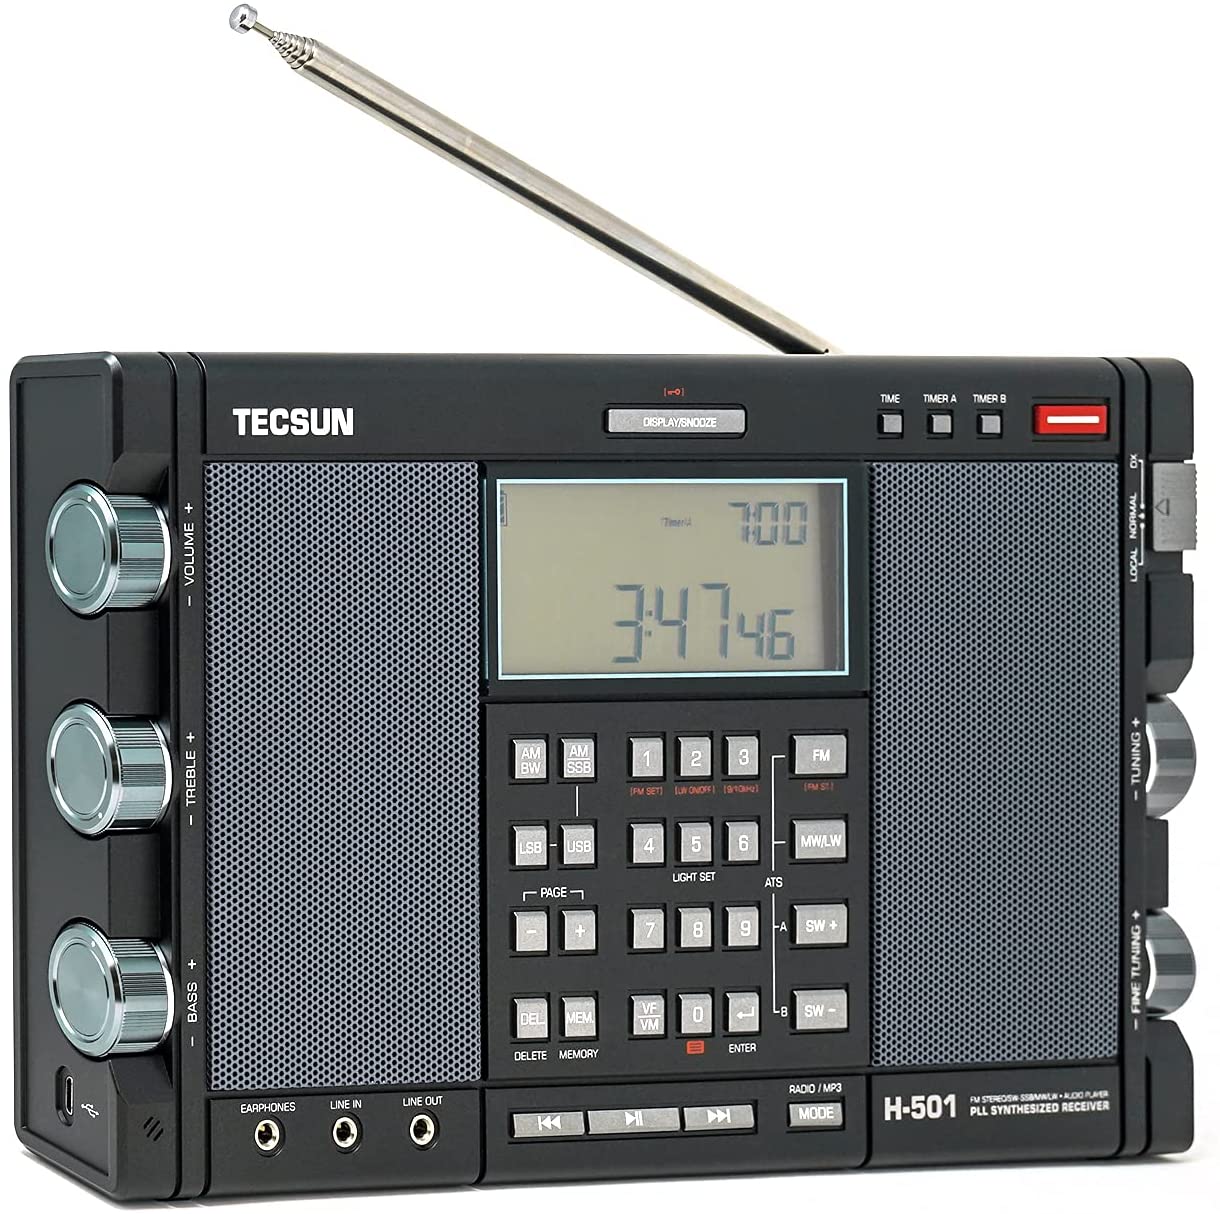 Tecsun H-501 Dual Speake AM FM Shortwave SSB with DSP triple conversion - image 2 of 6